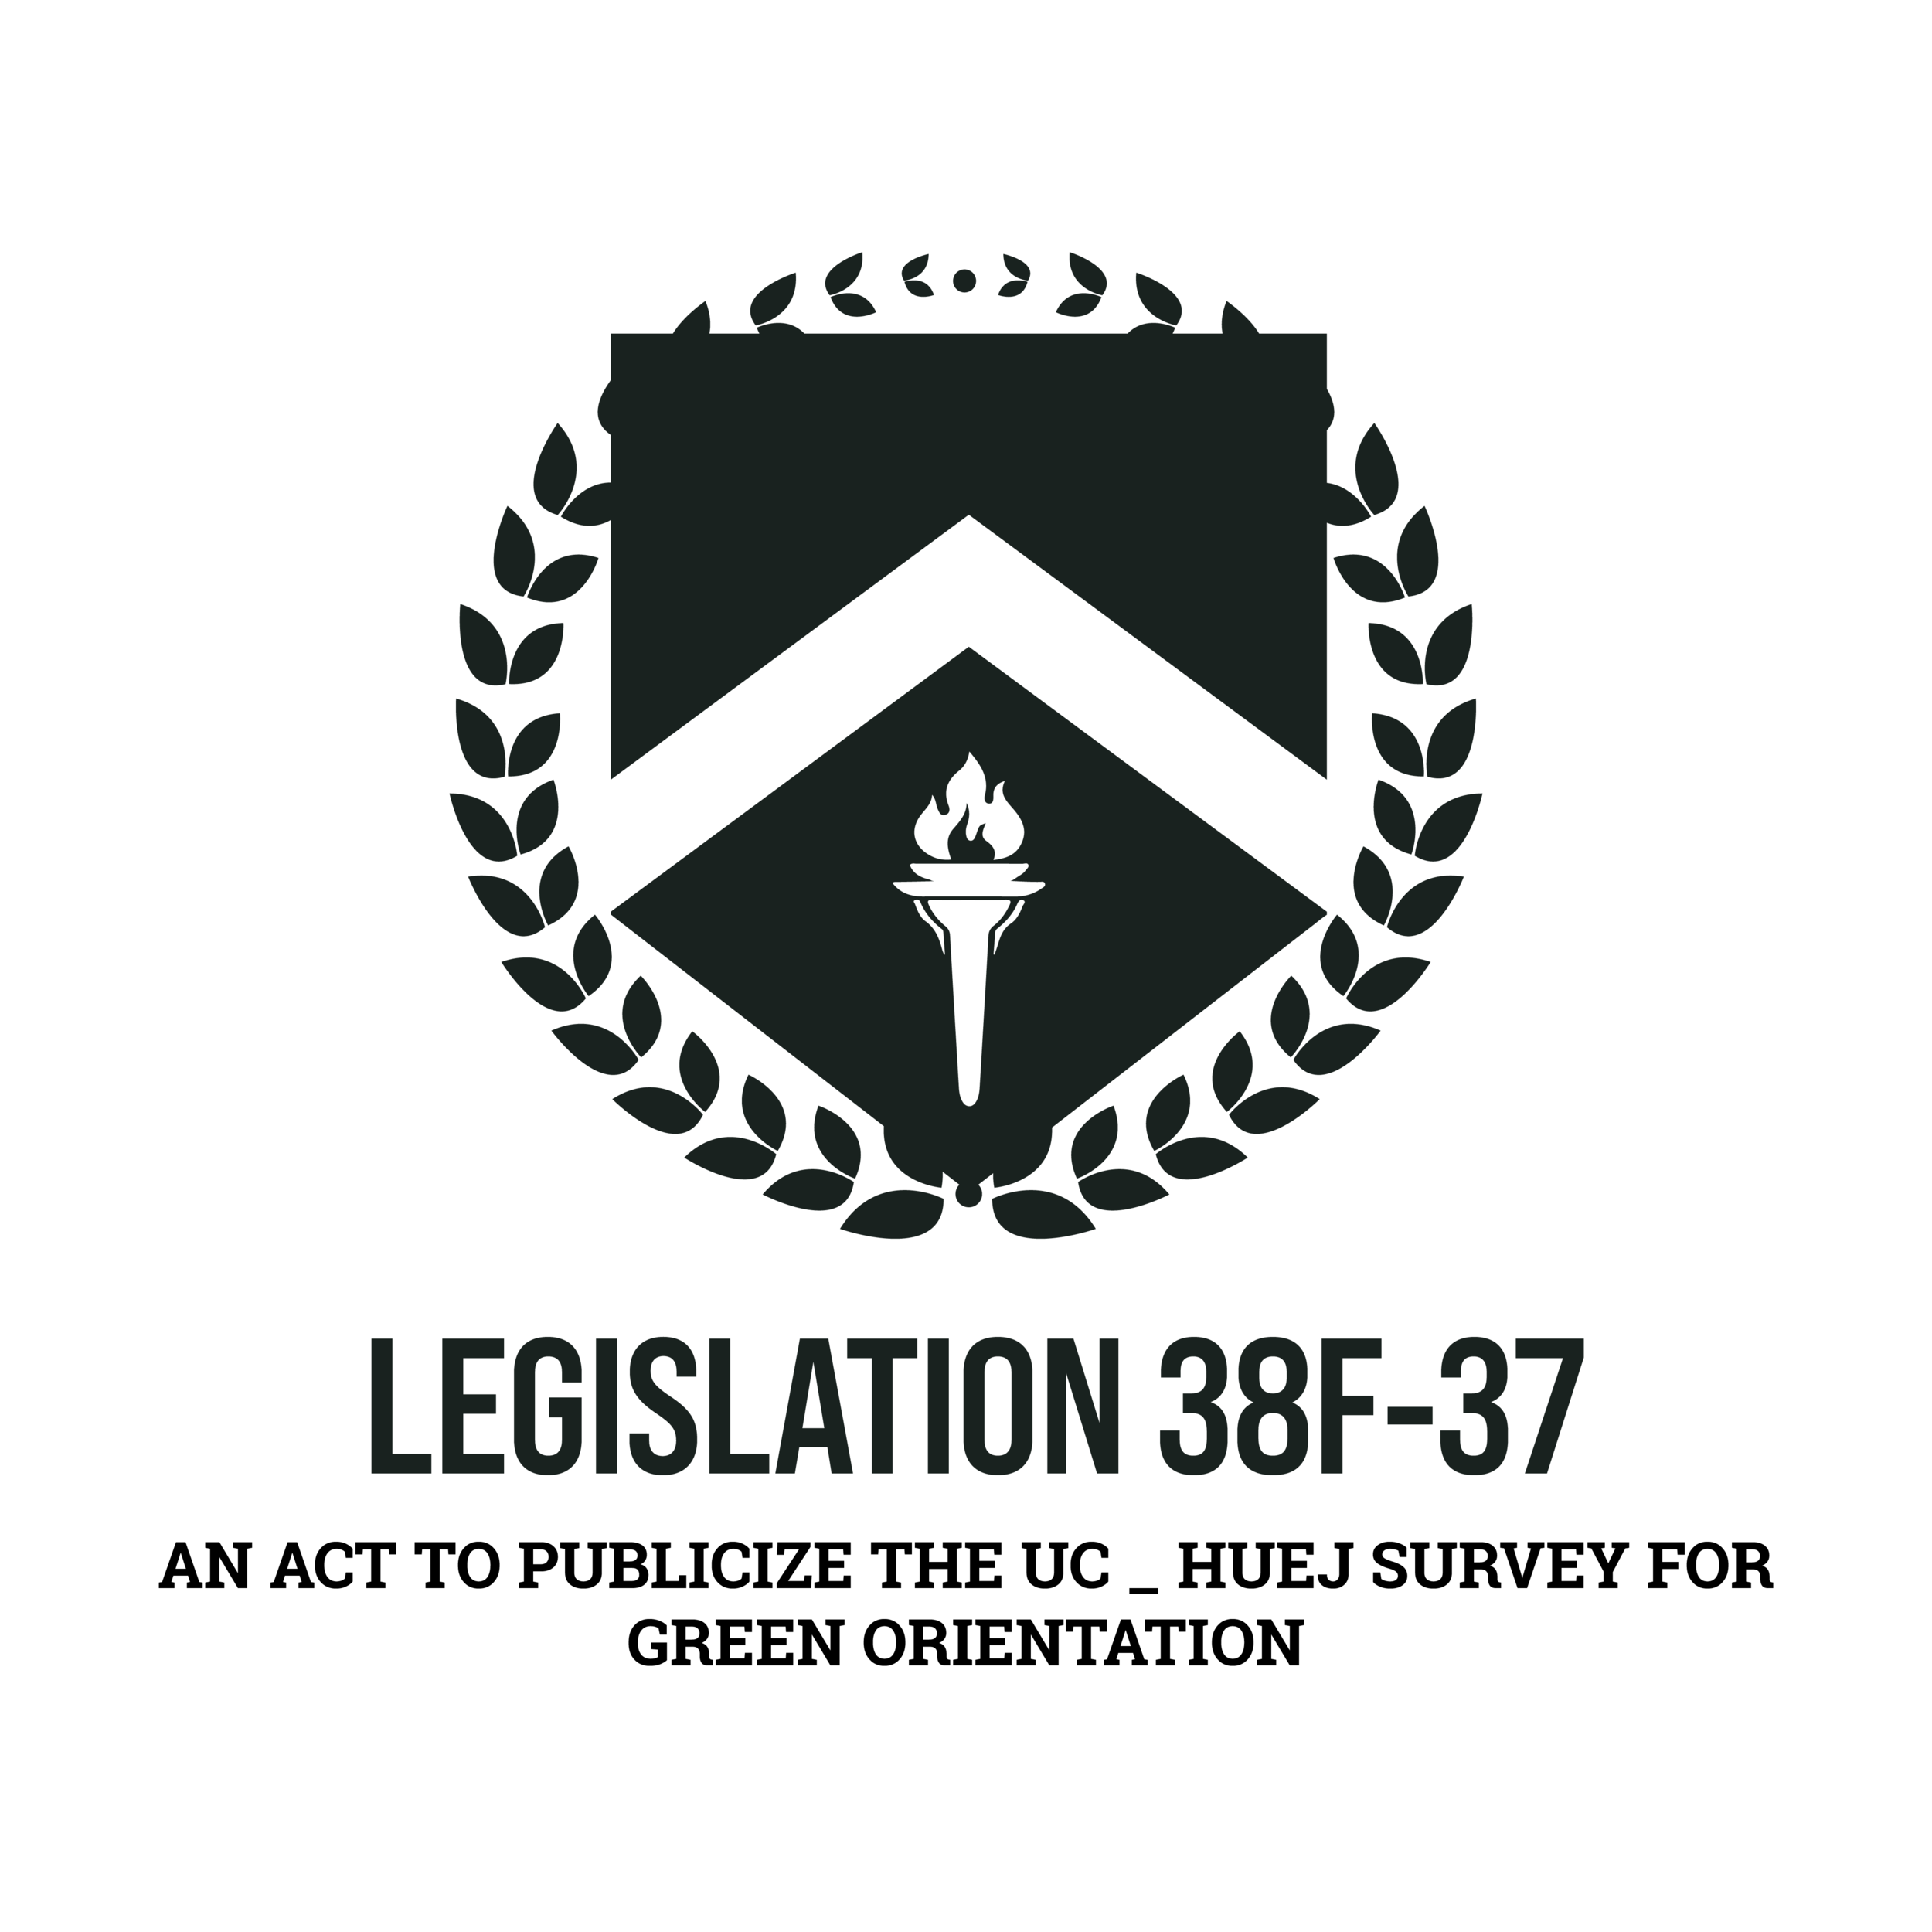  Legislation 38F-37: PASSED